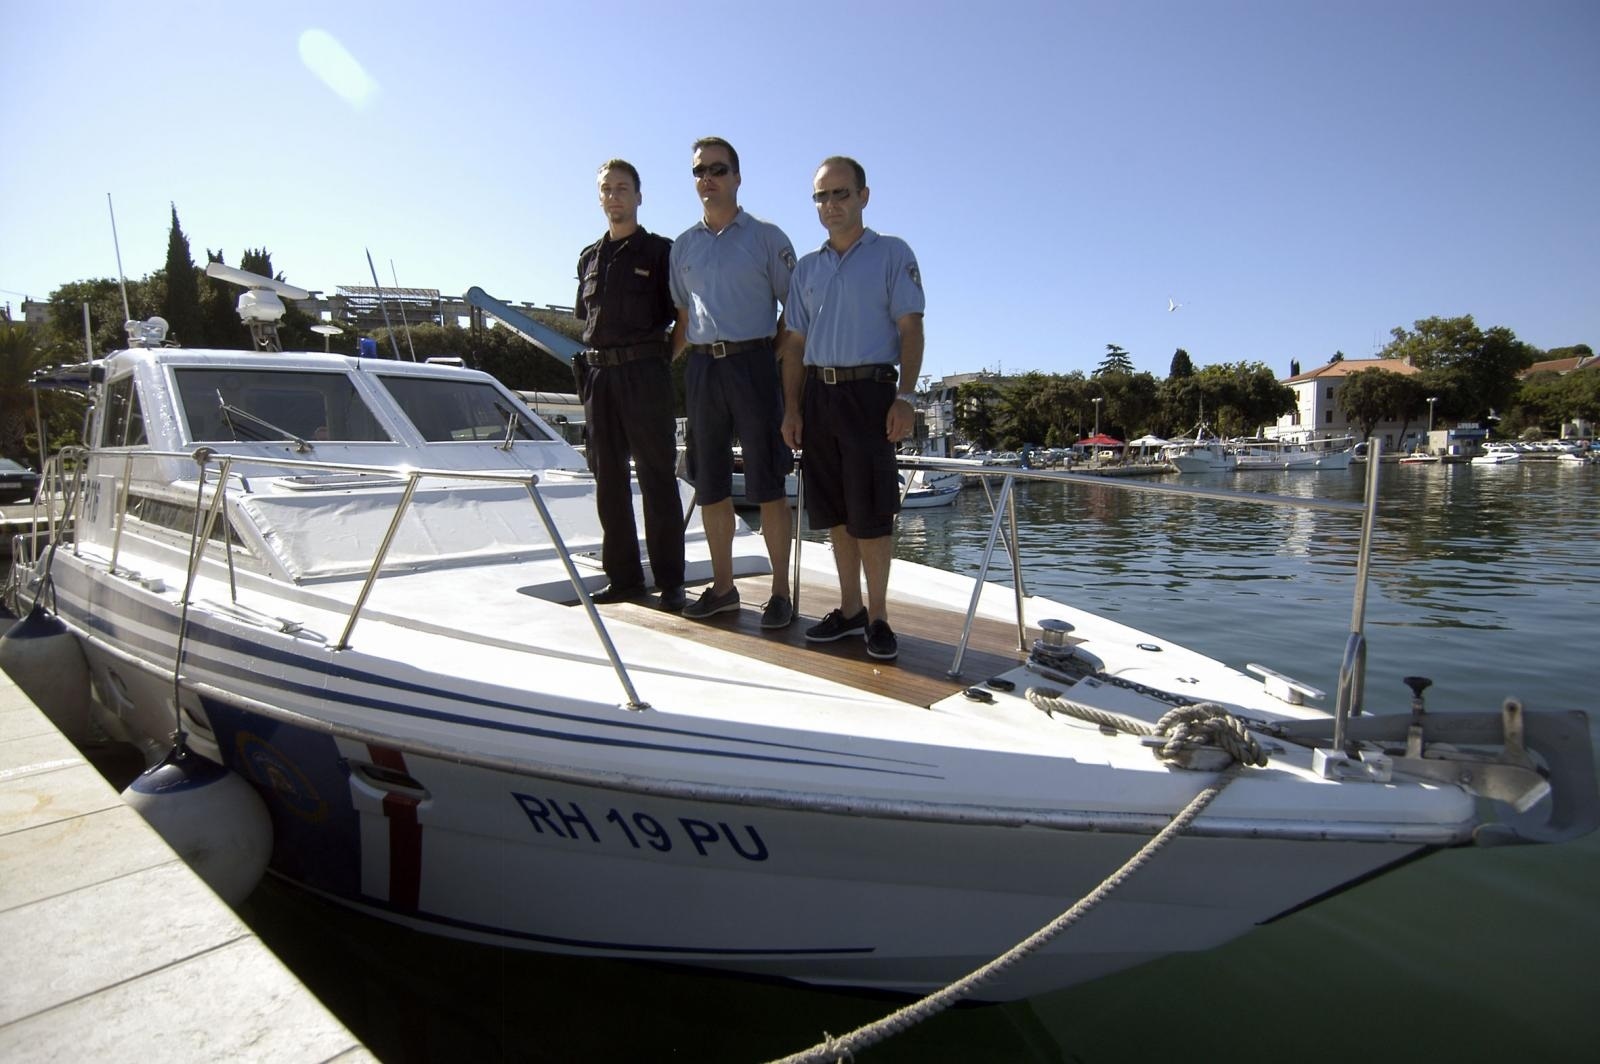 20.07.2009., Pula - Pripadnici pomorske policije ignorirali su savjete za ne izlazak na more te spasili troje Slovenaca nakon brodoloma.
Photo: Sasa Miljevic/24sata